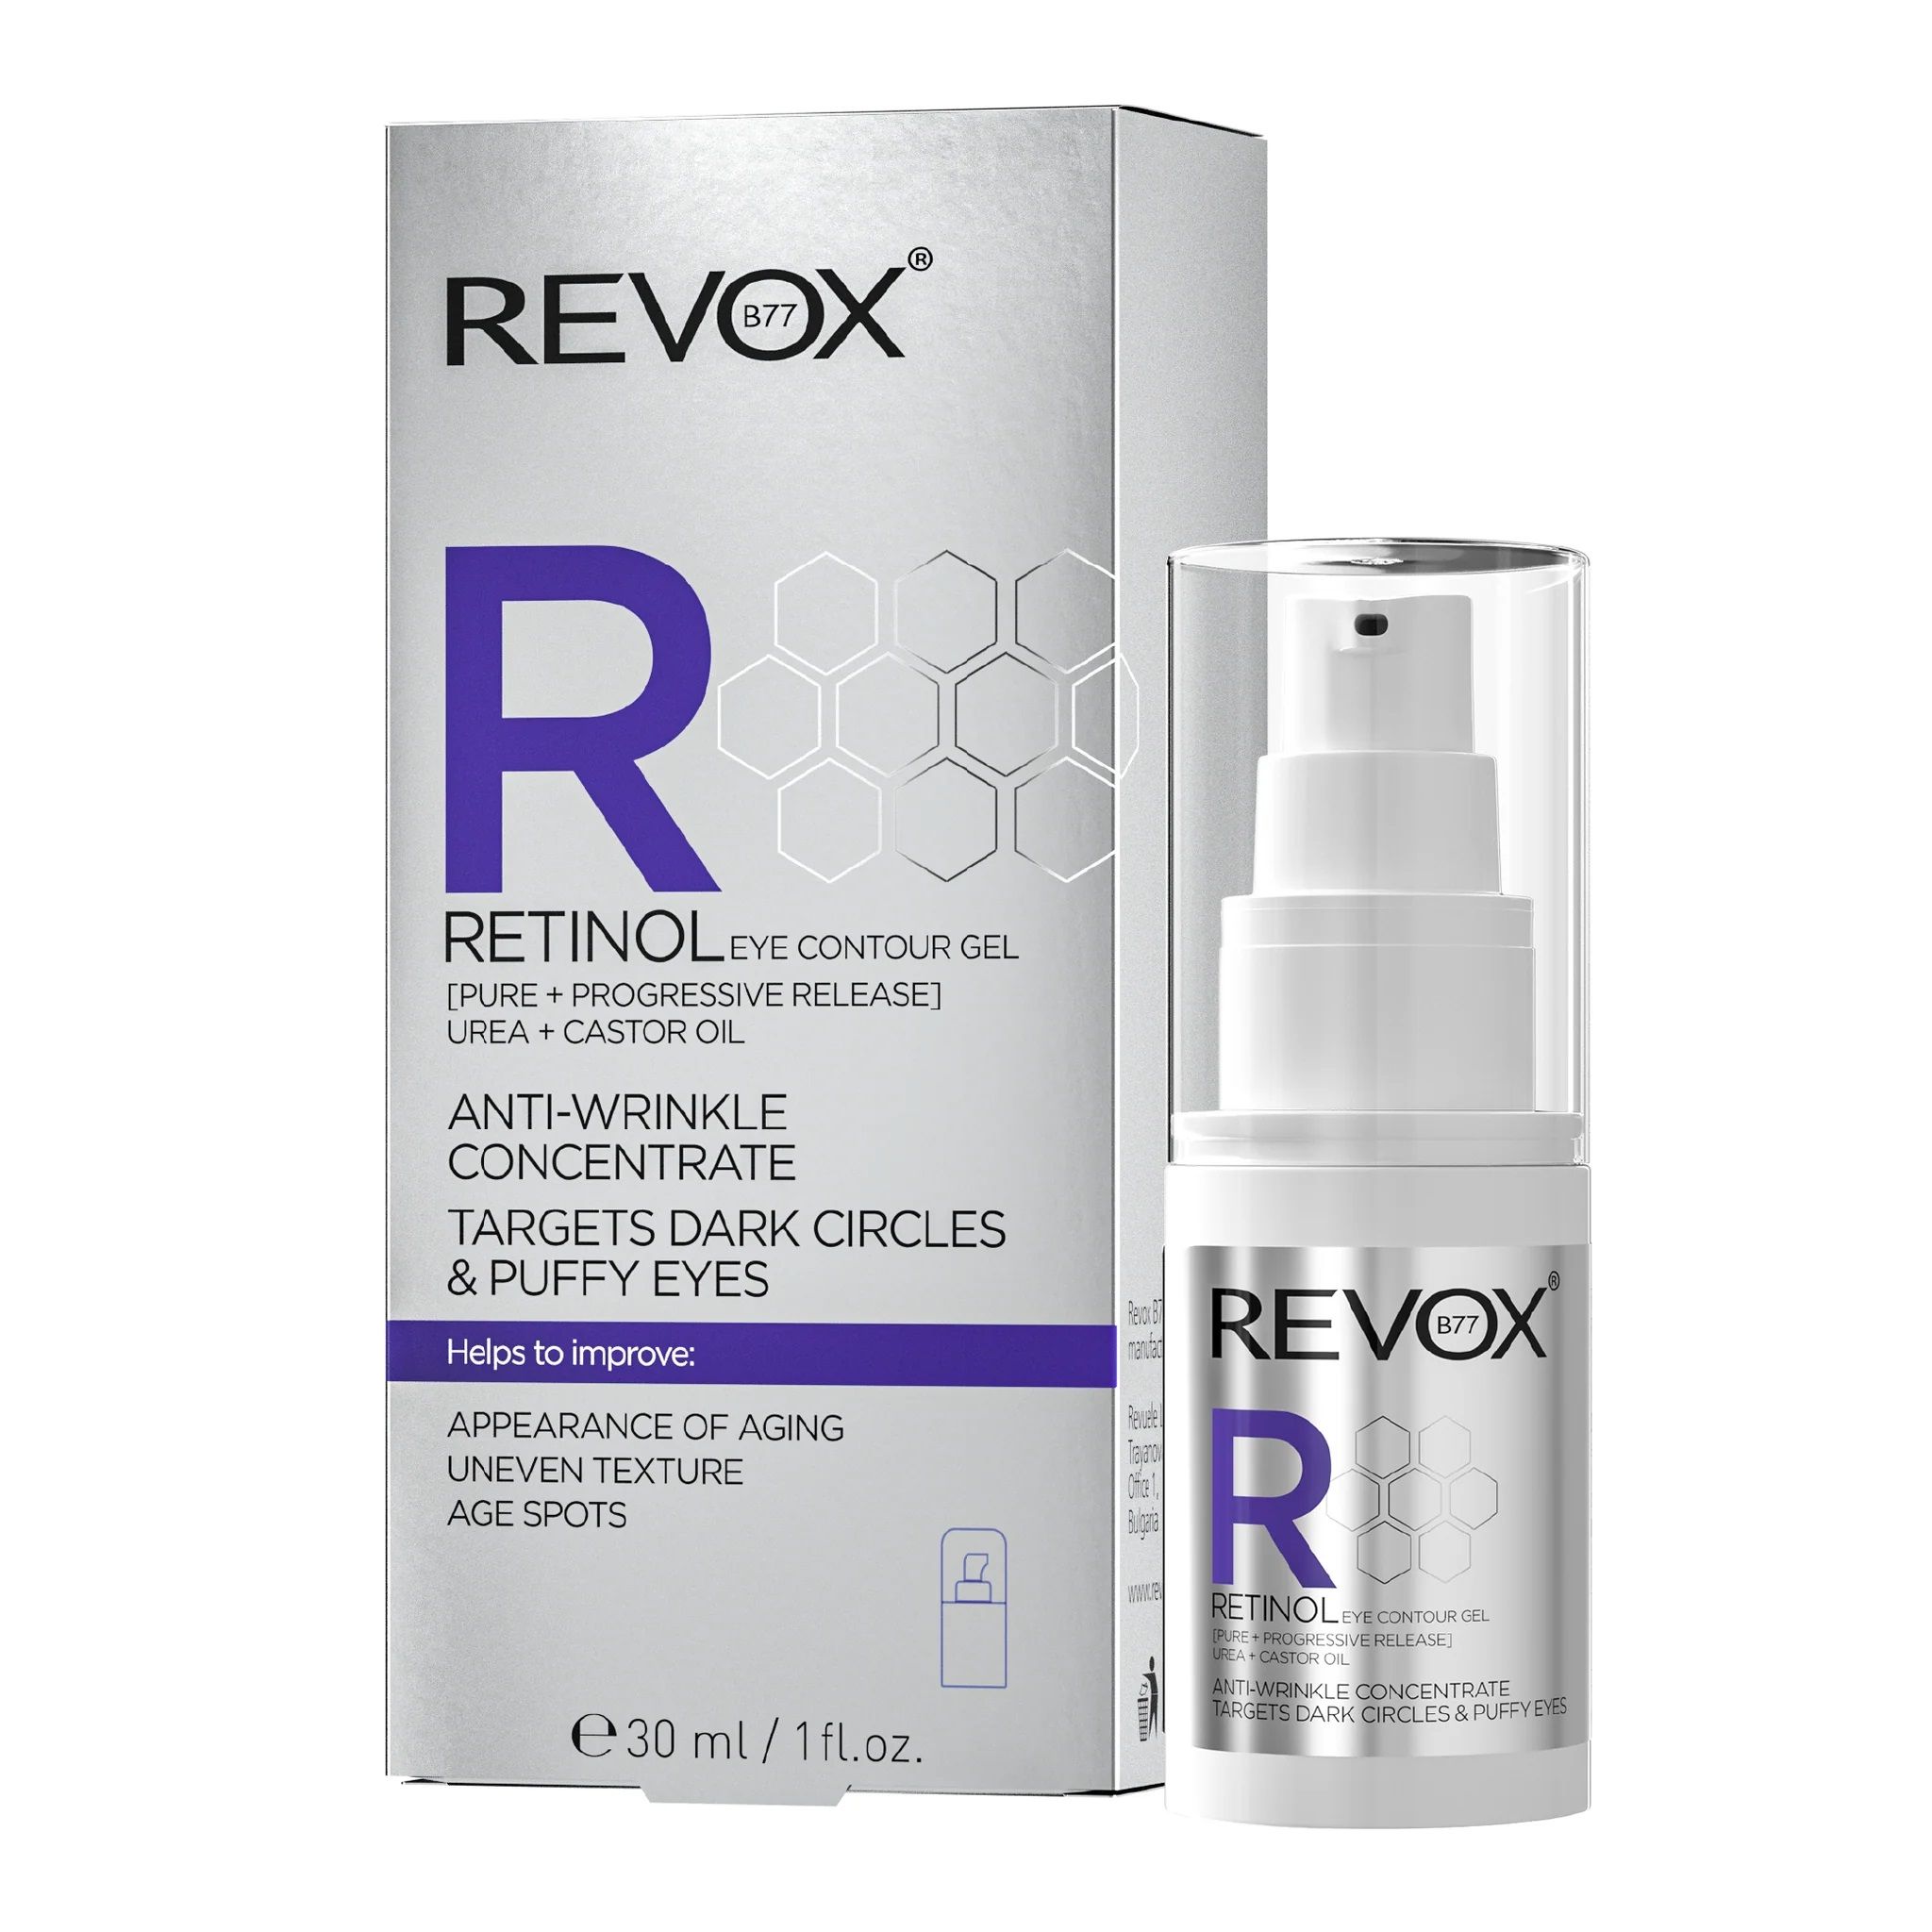  Gel dưỡng Revox B77 R Retinol ngăn ngừa lão hóa chứa retinol cho vùng da quanh mắt 30ml 